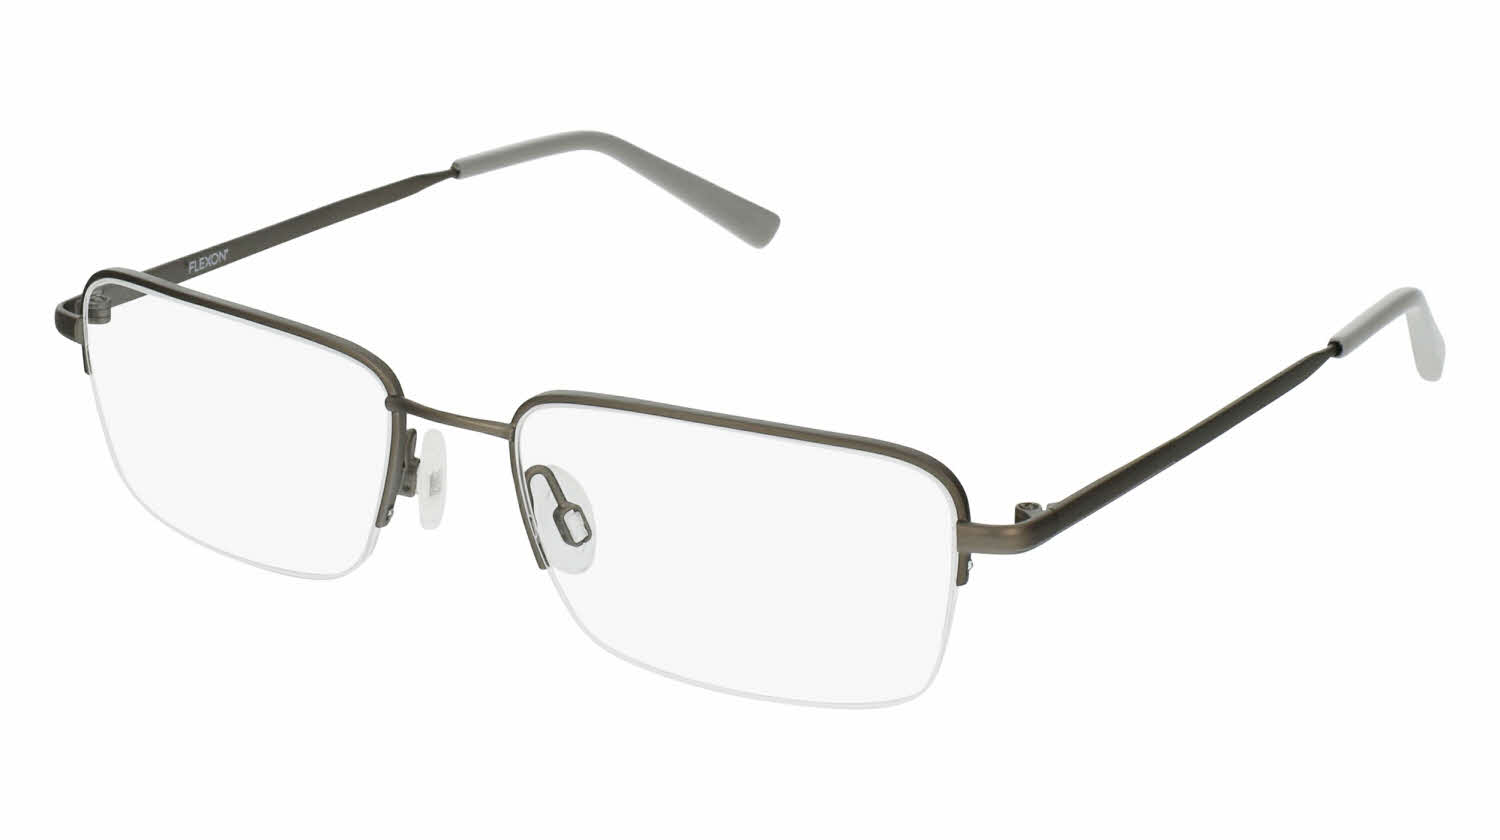 Flexon H6050 Men's Eyeglasses In Gunmetal